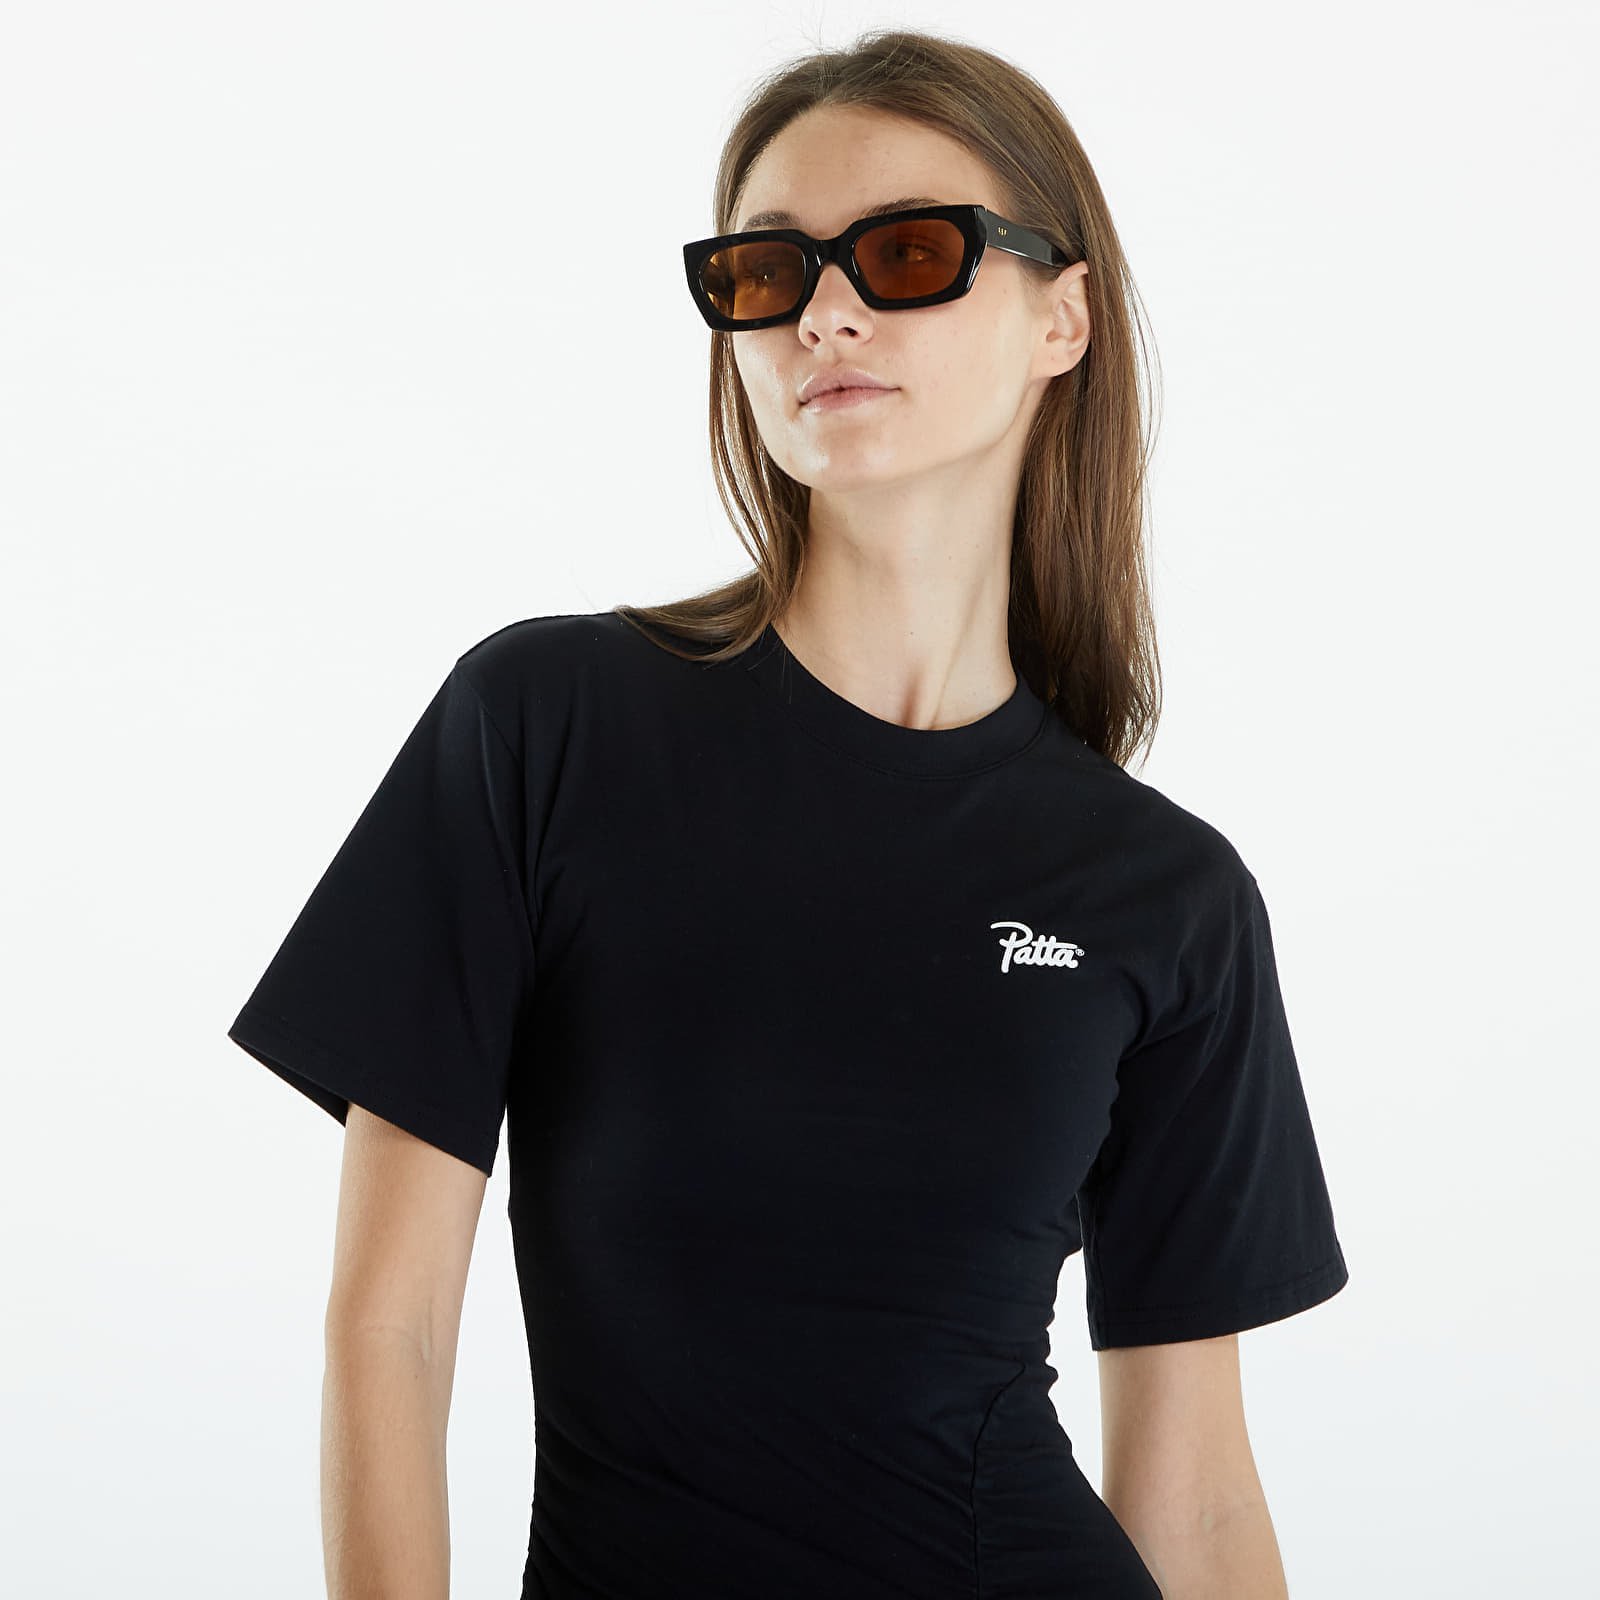 Femme Ruched T-Shirt Dress Black